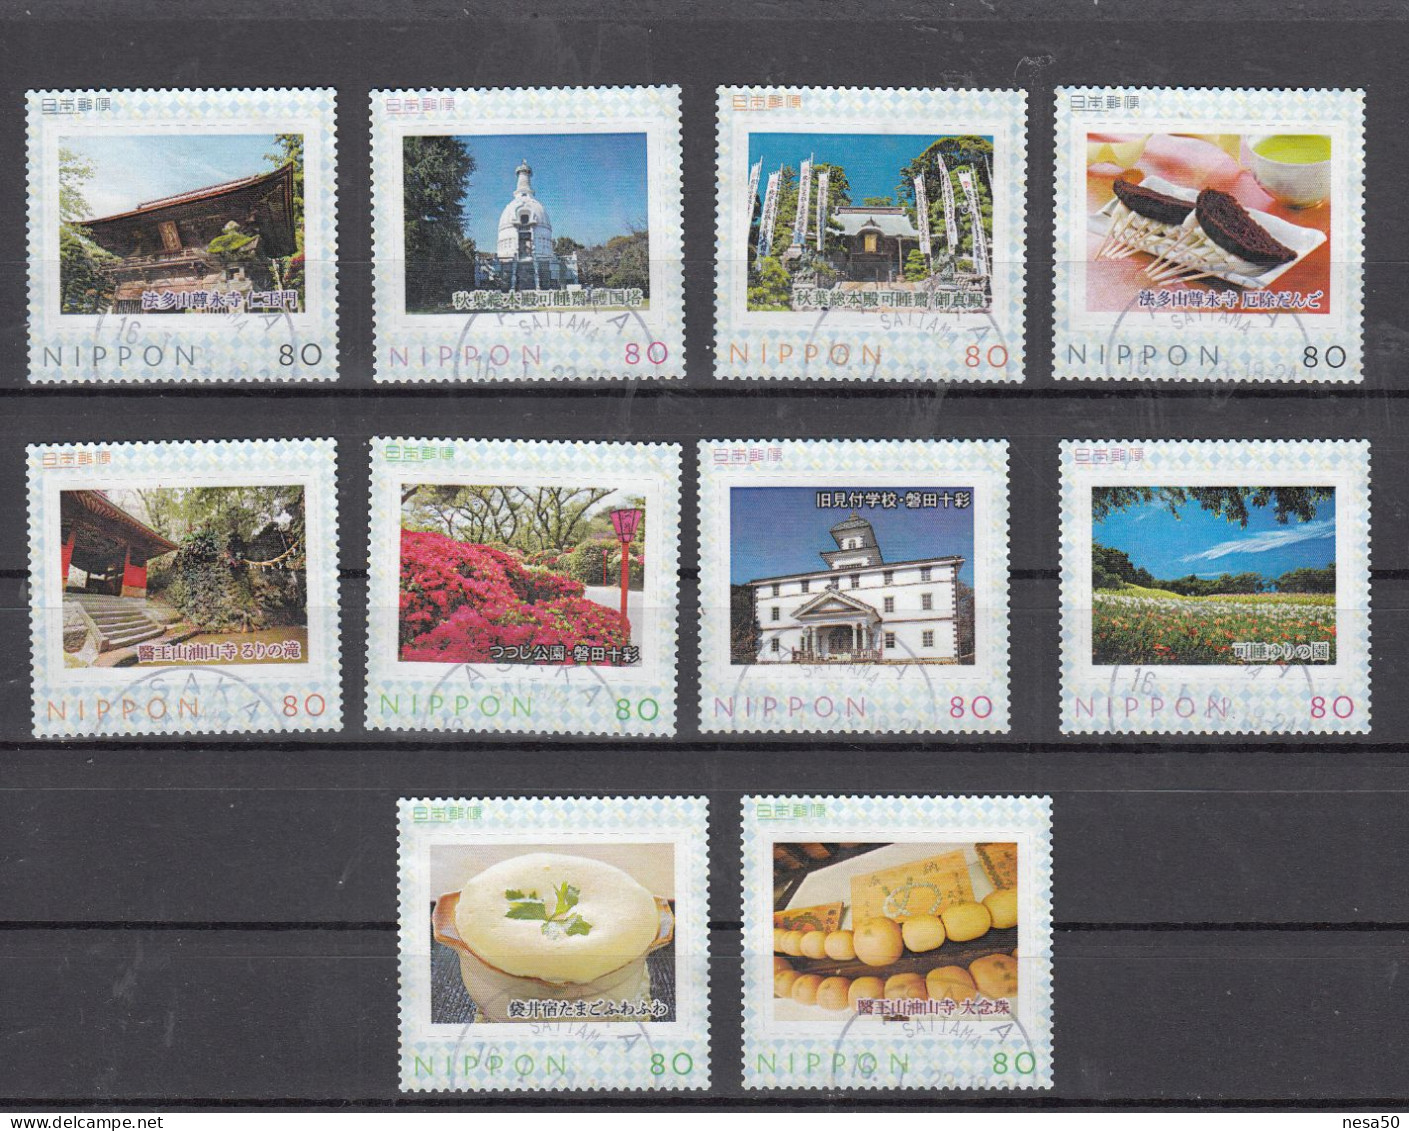 Japan Persoonlijke Zegels 10 St. Gestempeld - Used Stamps